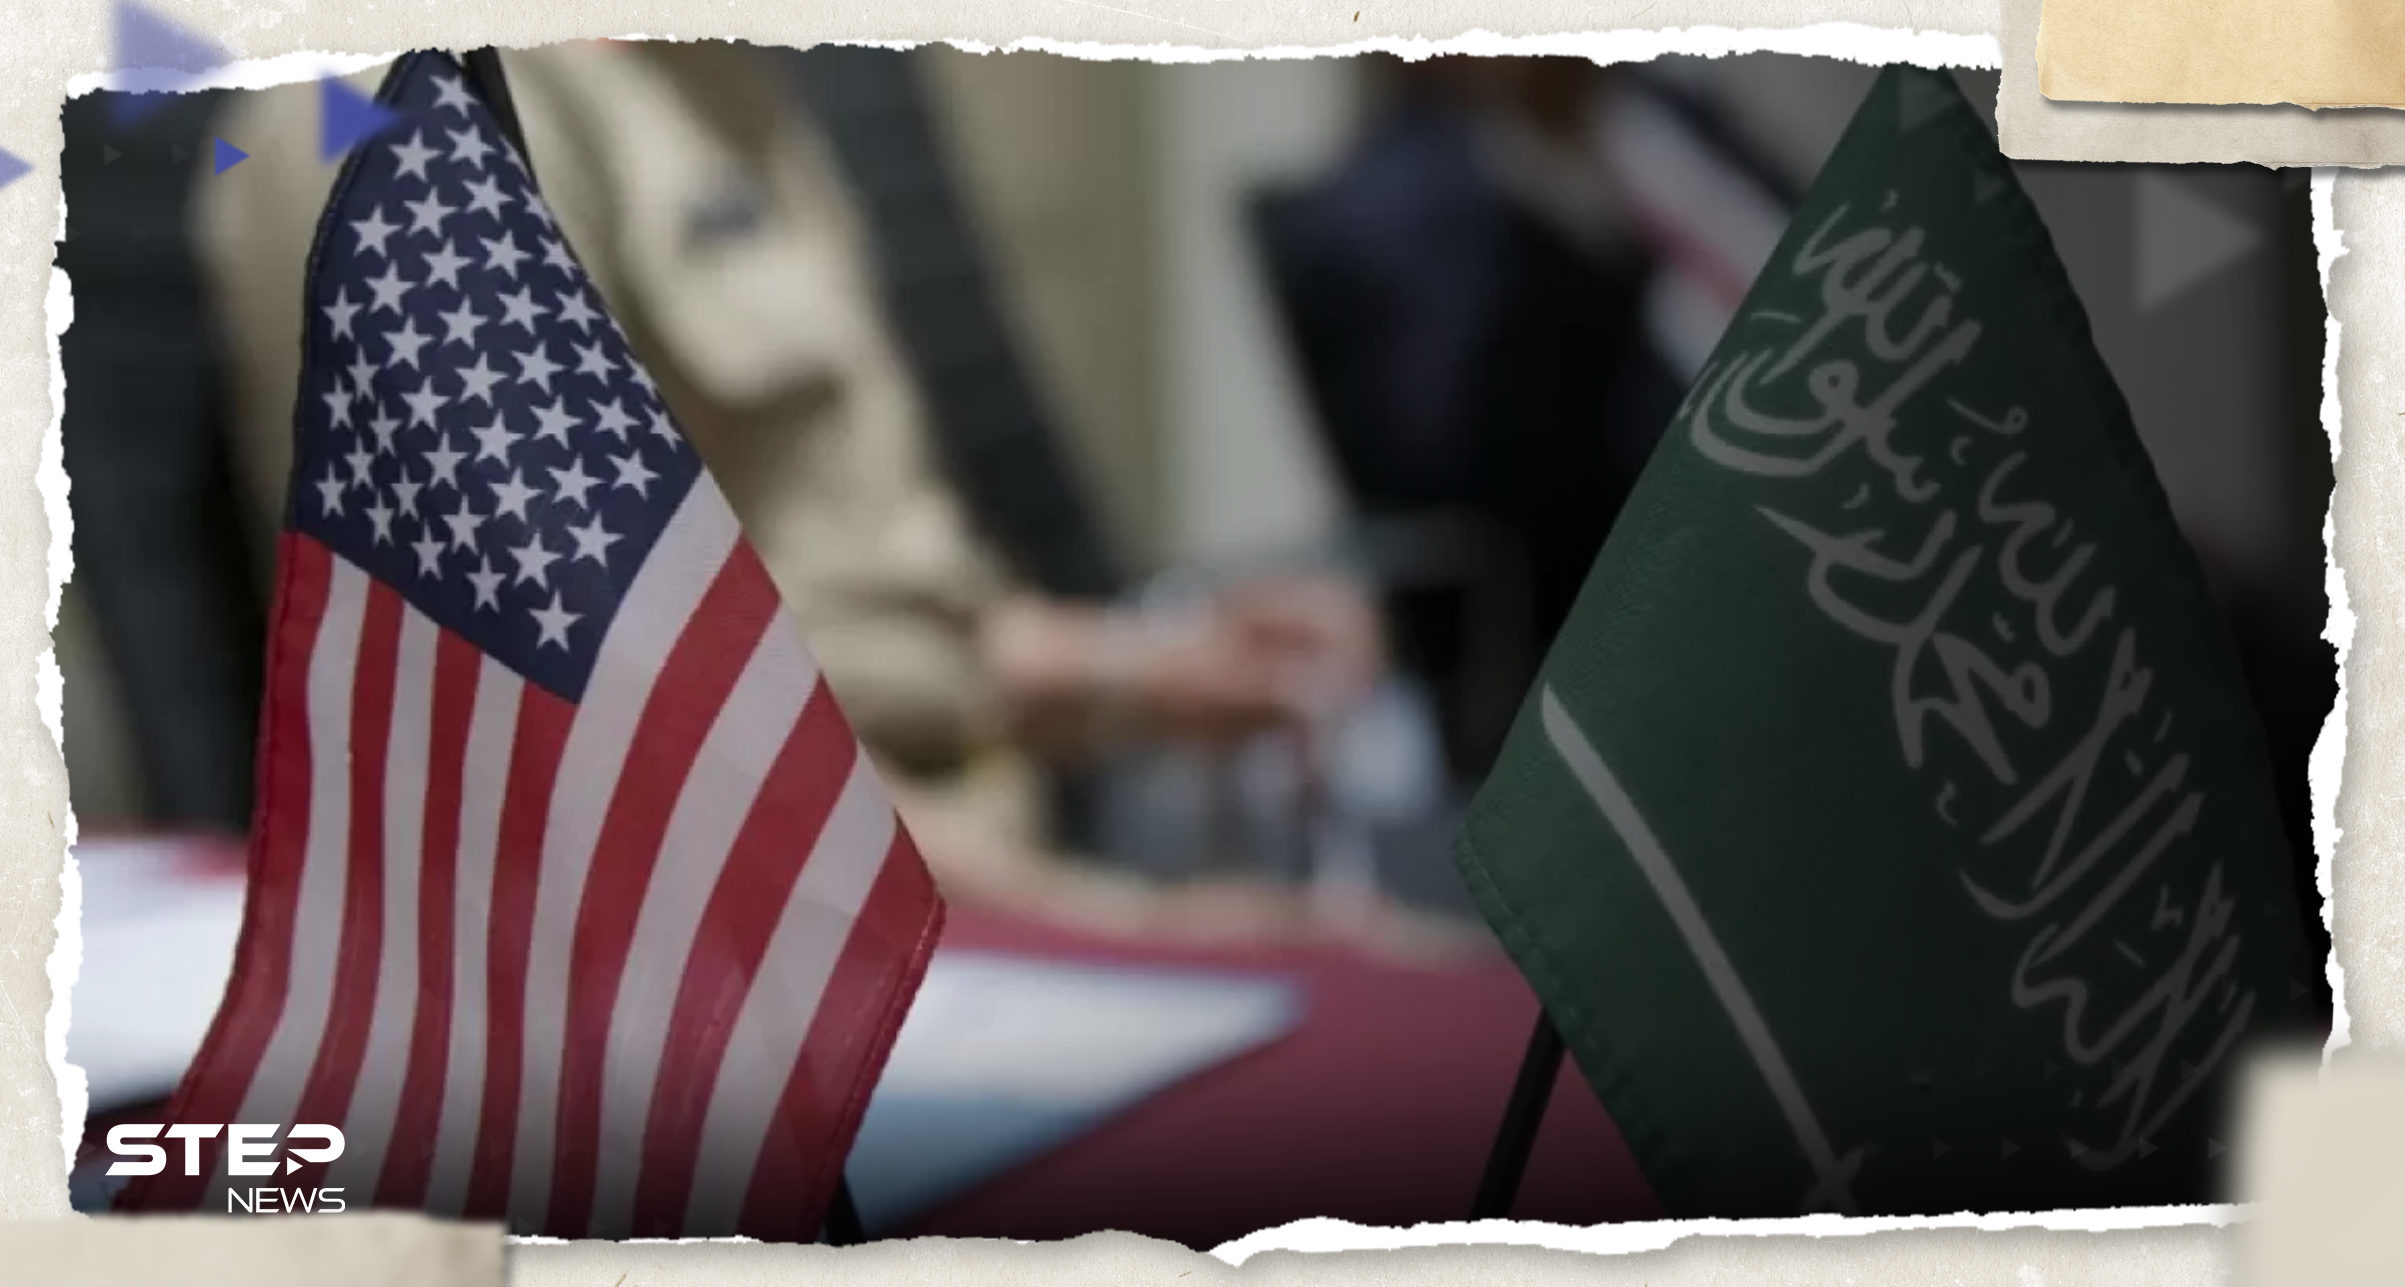 مستشار الأمن القومي الأمريكي يبدأ زيارة للسعودية وحديث عن حل لملفات بالشرق الأوسط 